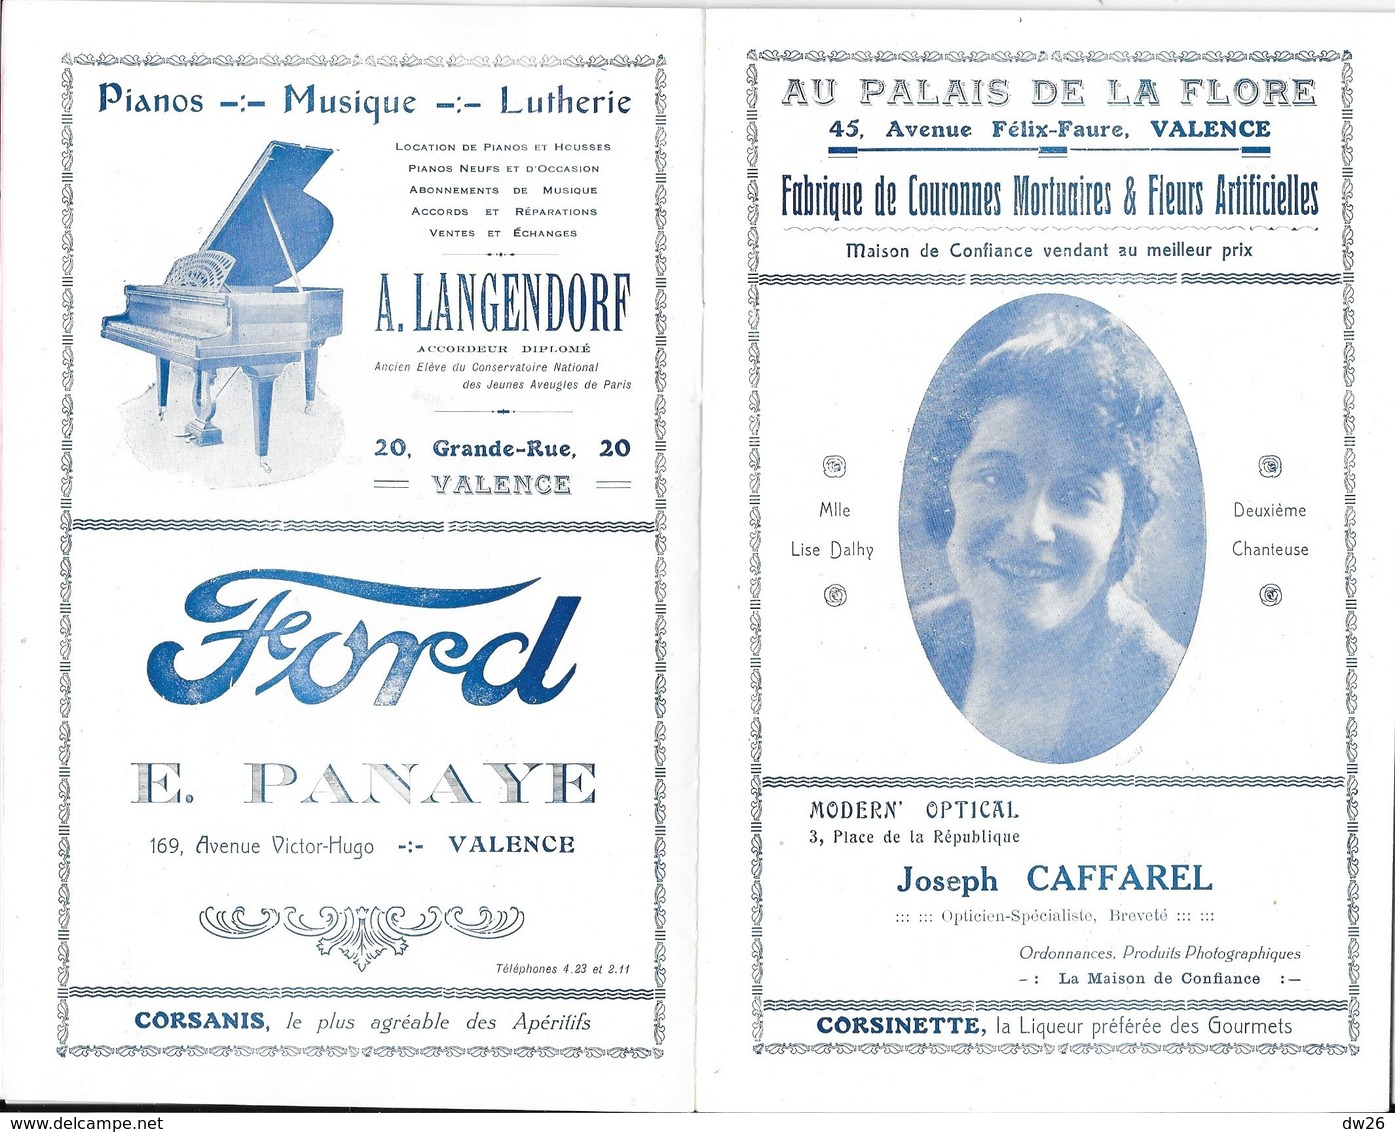 Ville De Valence - Programme Officiel De L'Opéra Municipal, Saison 1925-26 - Opérette: P.L.M., Artistes - Programmes